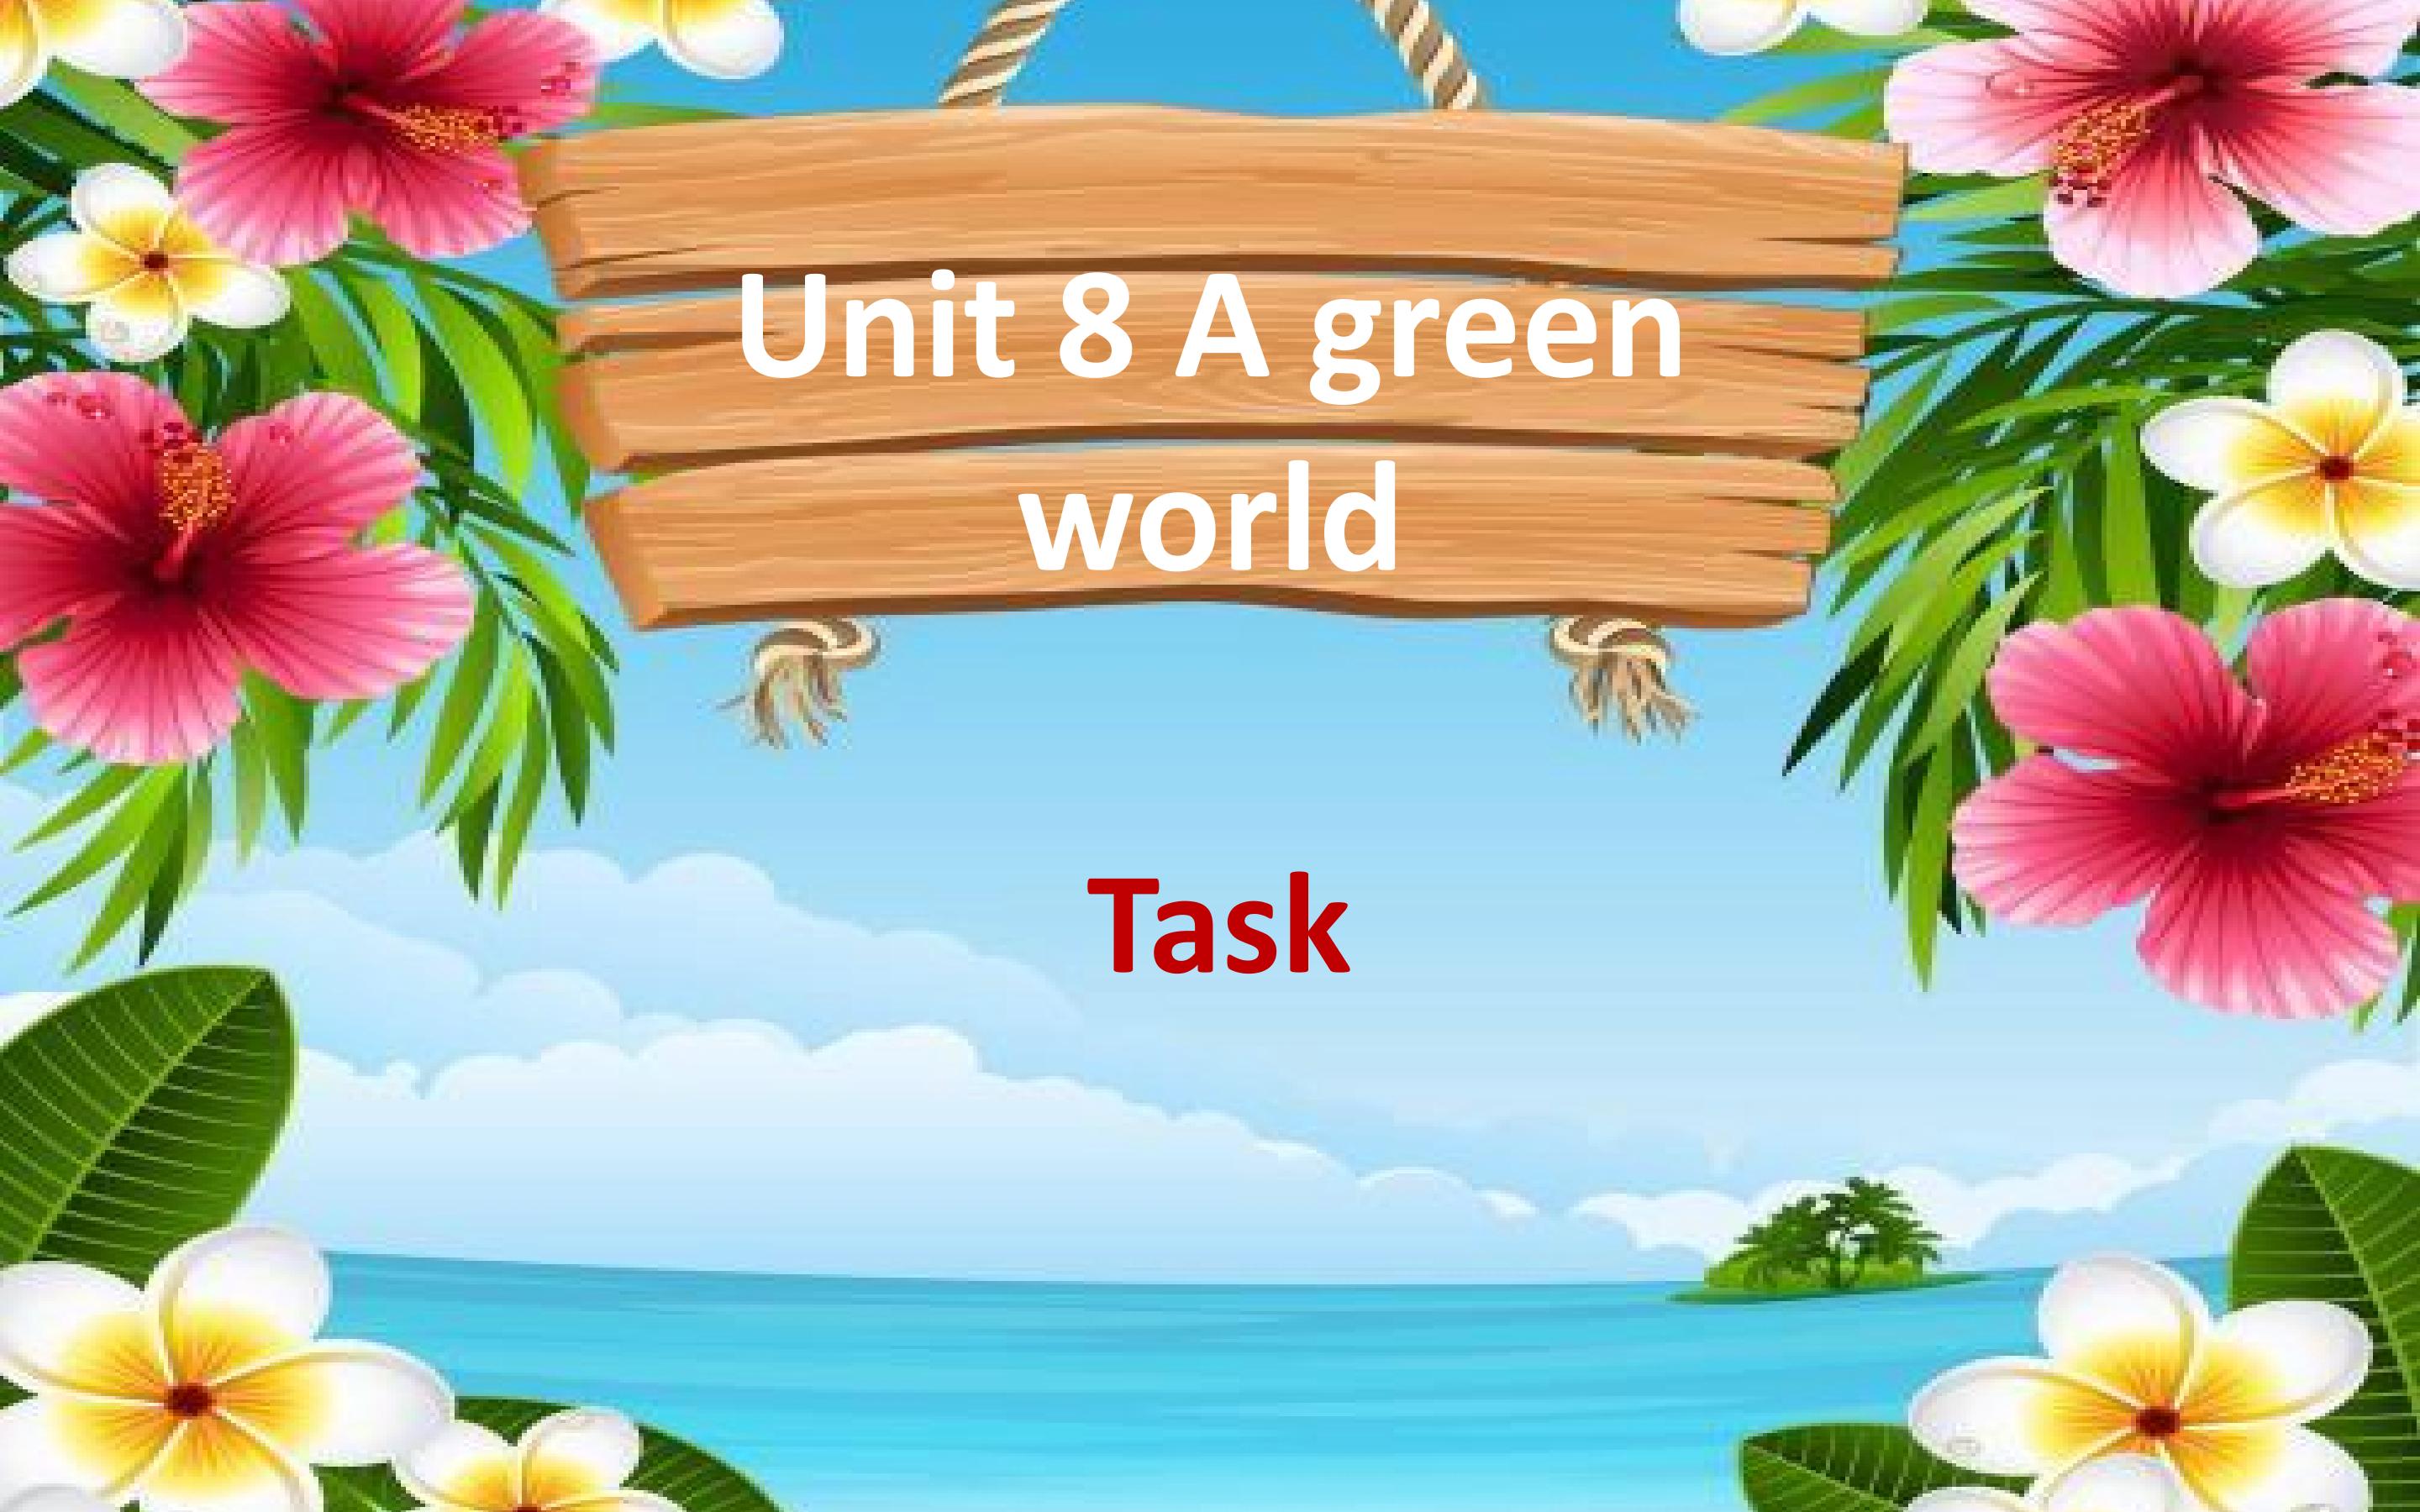 A green world  Task